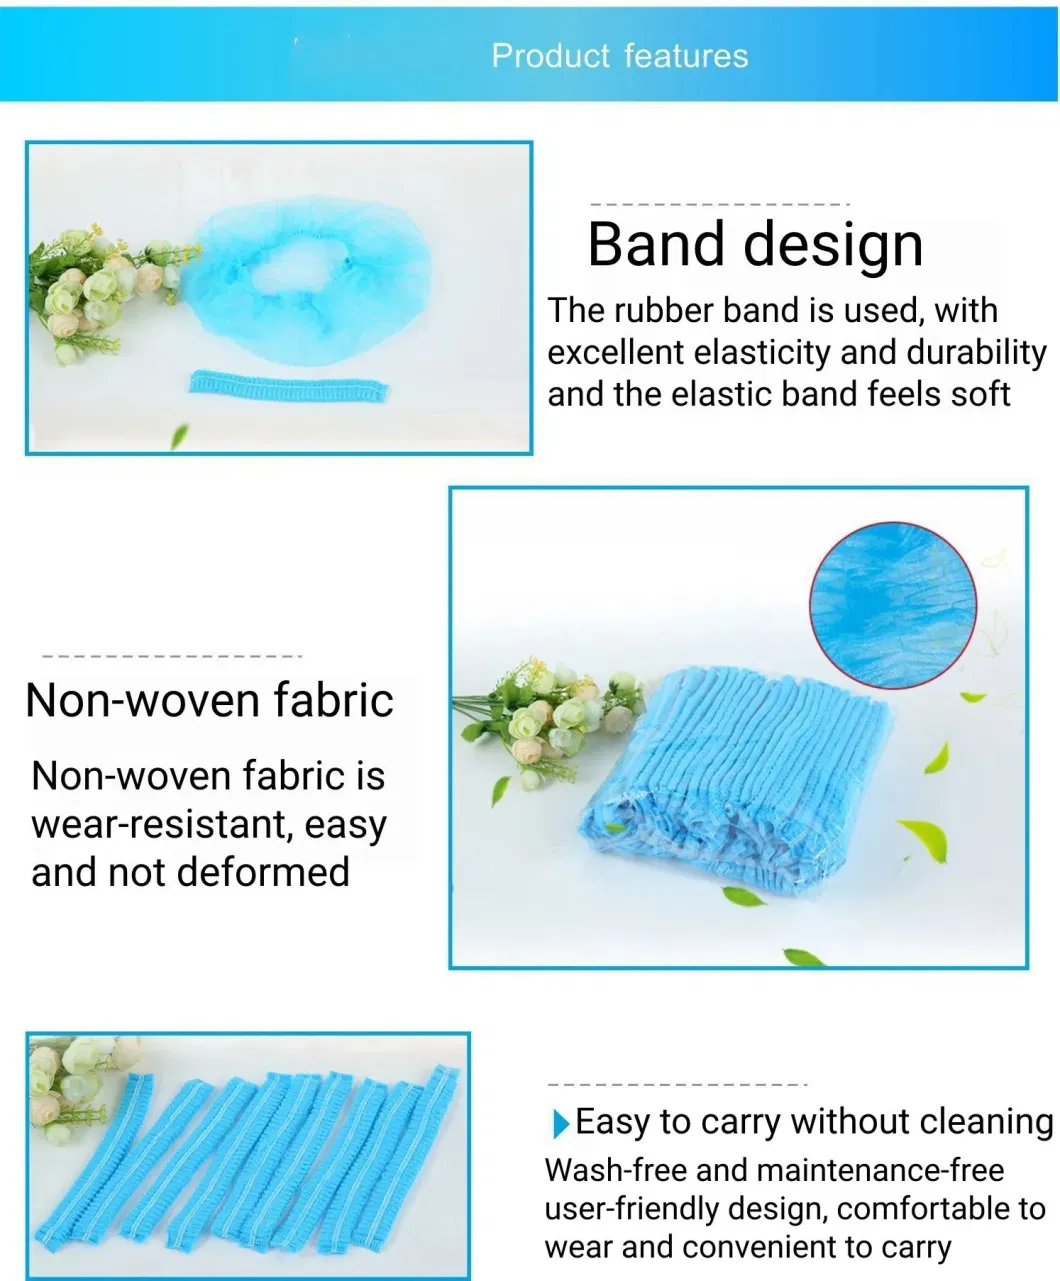 Multi-Color Disposable Non-Woven Fabric Round Cap Bouffant Cap